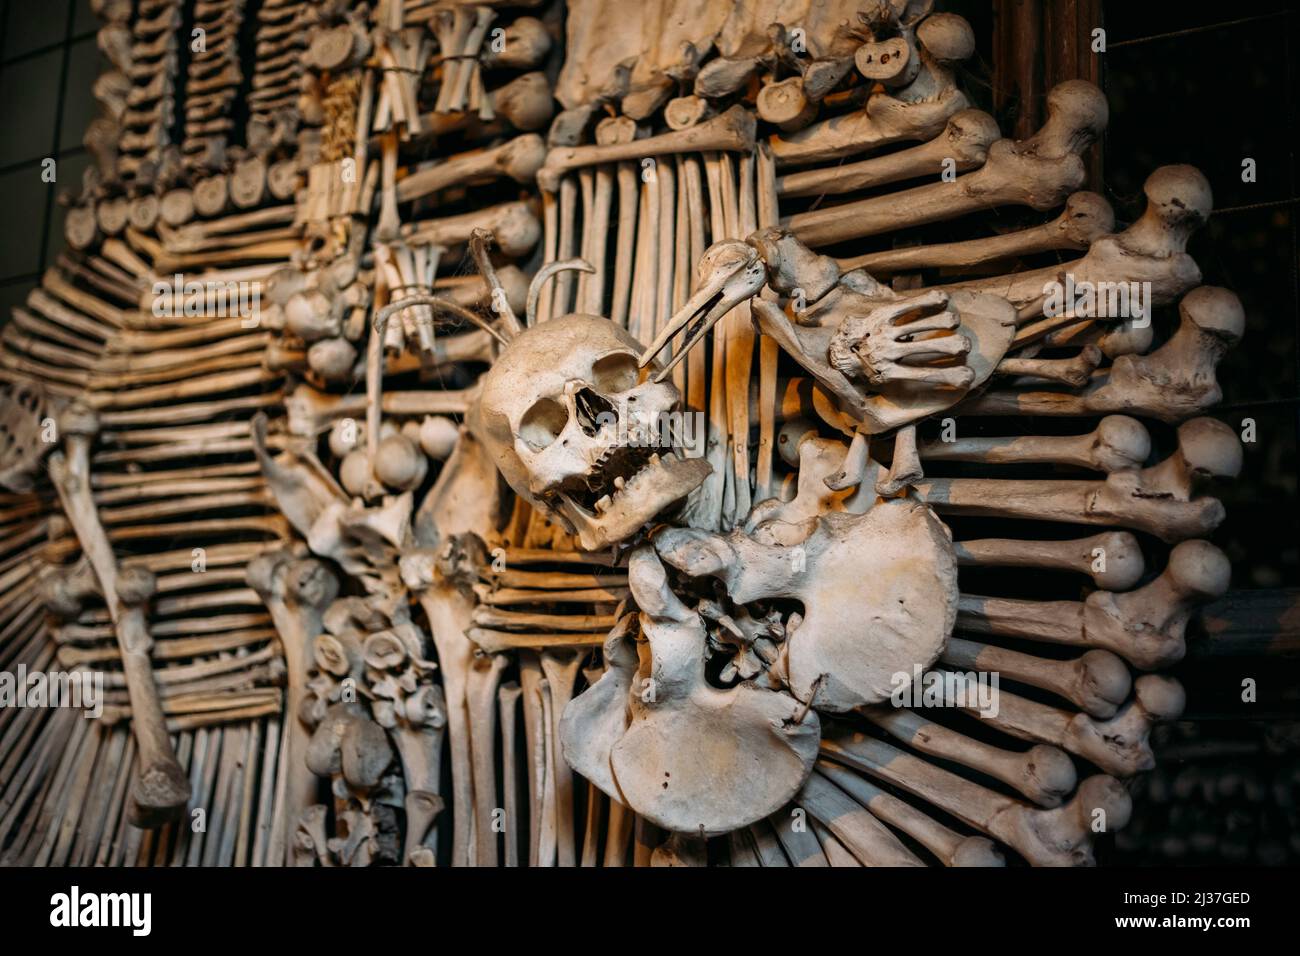 Alte Knochen, Schädel In Sedlec Beinhaus (Kostnice), Kutna Hora, Tschechisch. Beinhaus Enthalten Skelette Von Zwischen 40.000-70.000 Menschen, Deren Knochen Waren Stockfoto